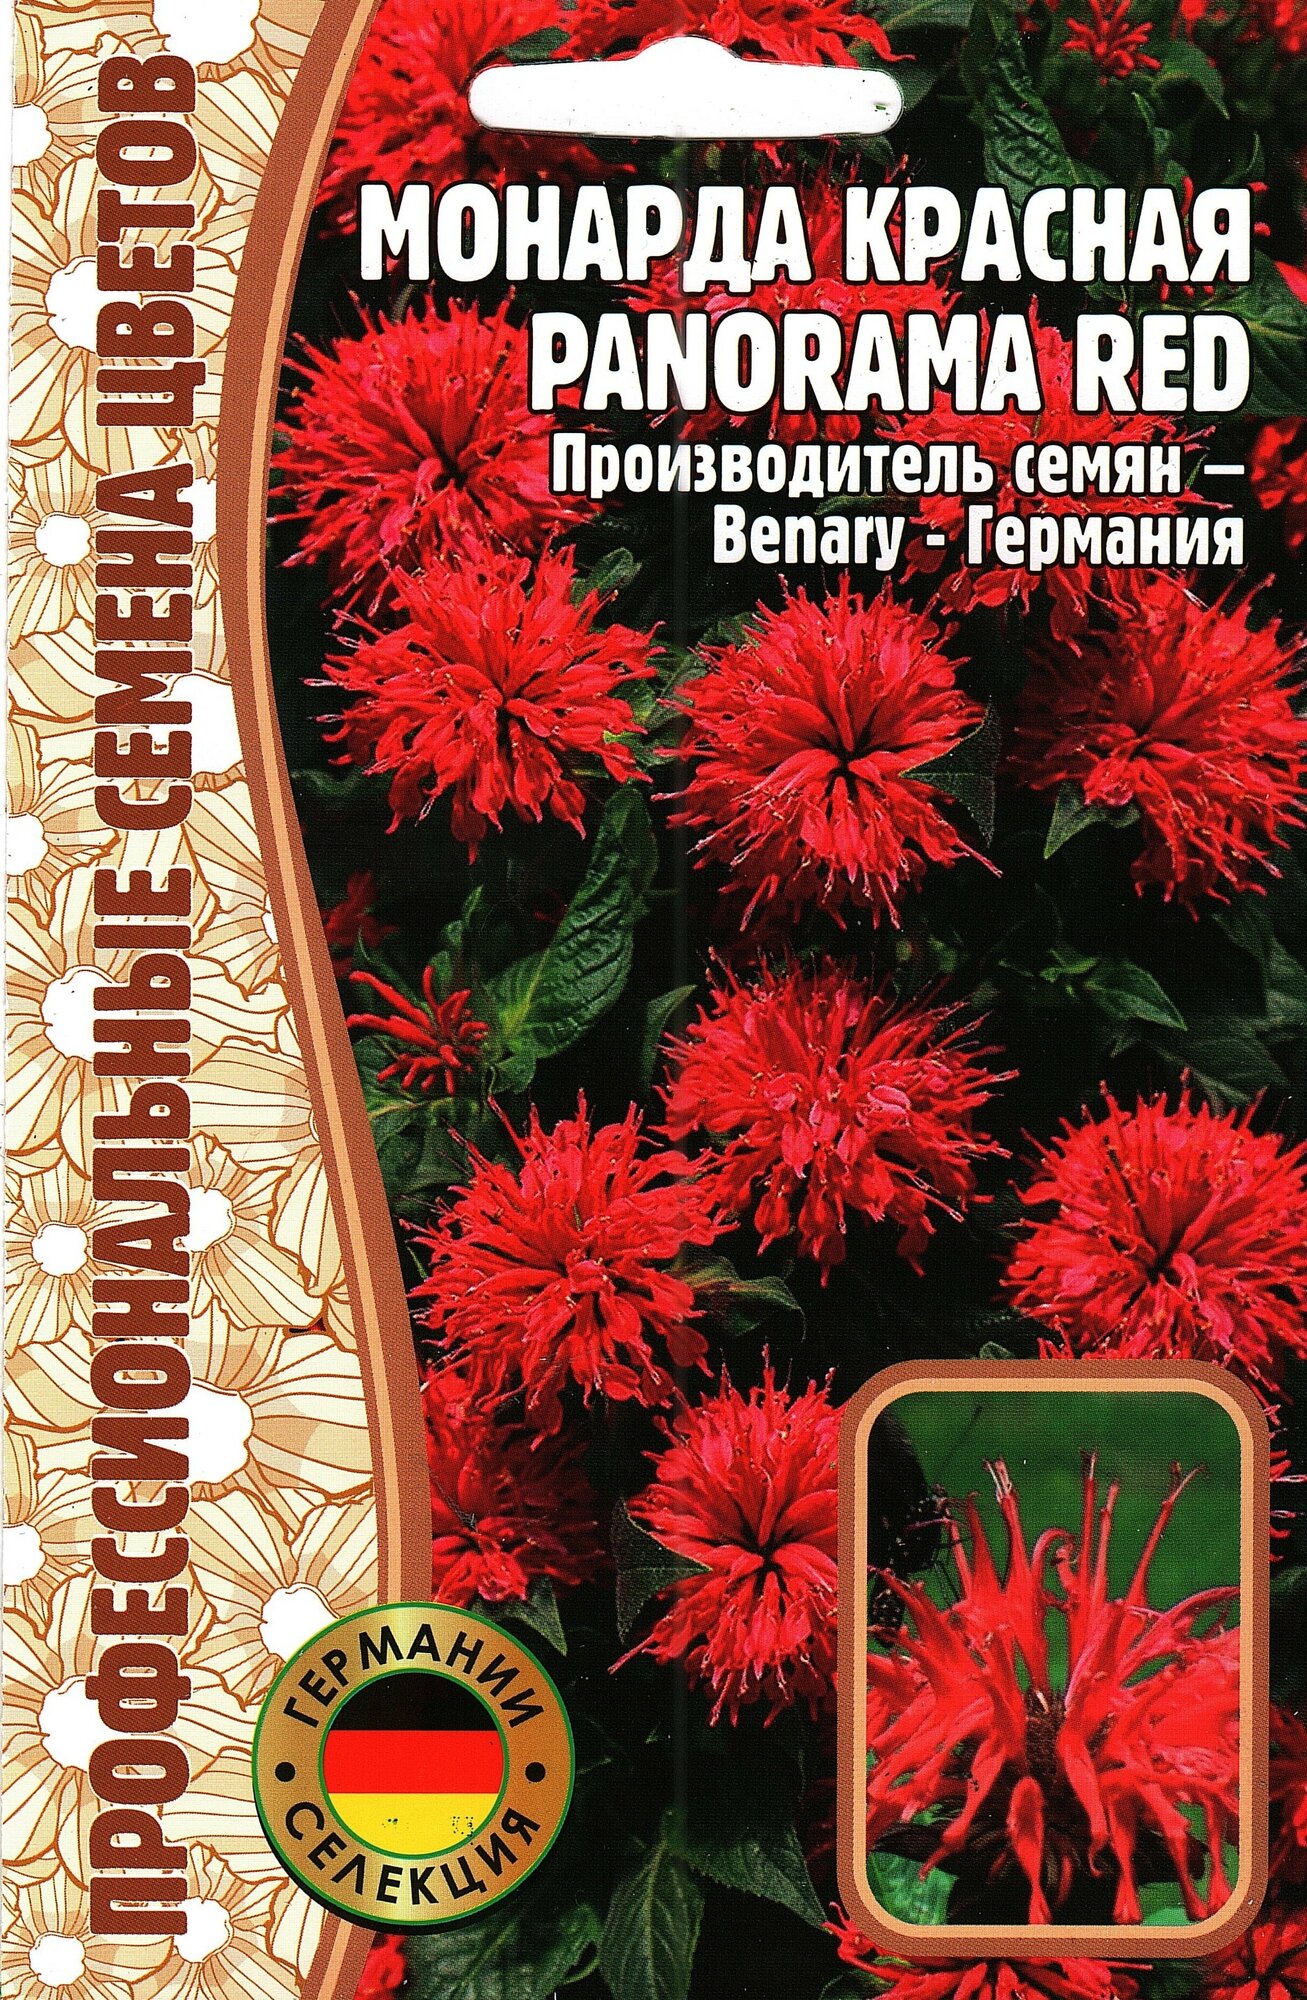 Монарда красная / Panorama red многолетник ( 1 уп: 5 семян )